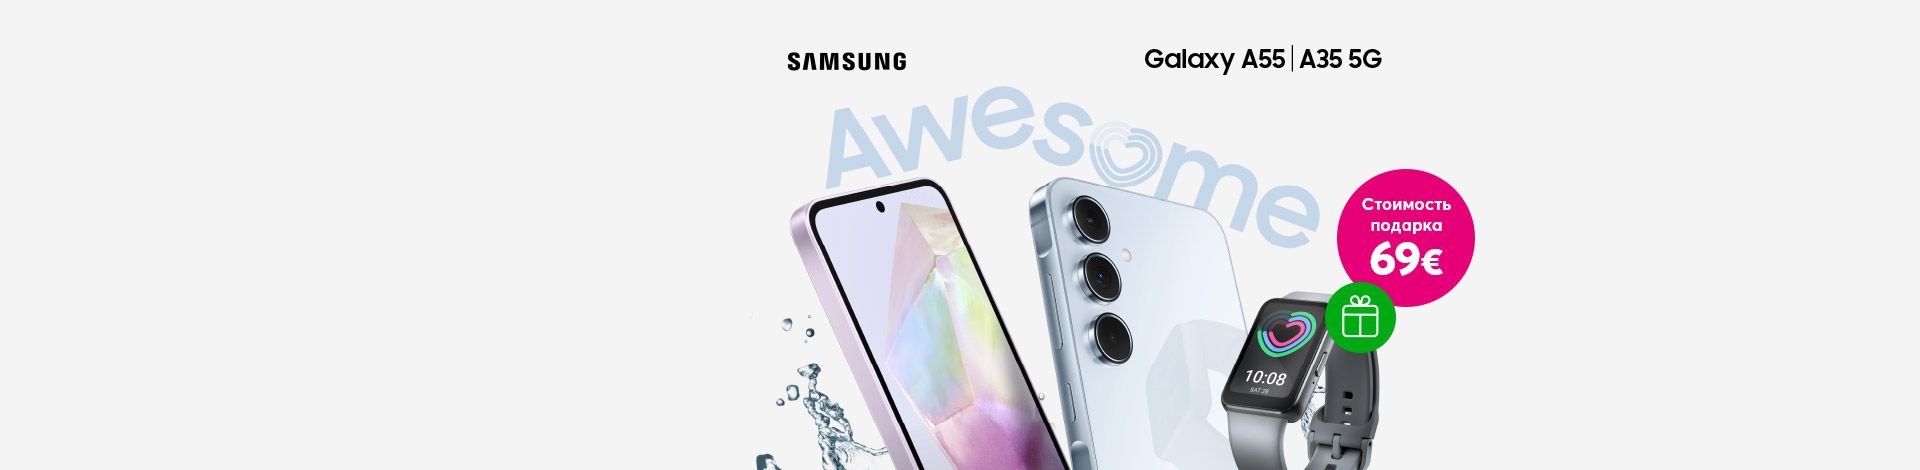 Купи новейший смартфон Samsung серии Galaxy A и получи в подарок смарт-часы Galaxy Fit3!